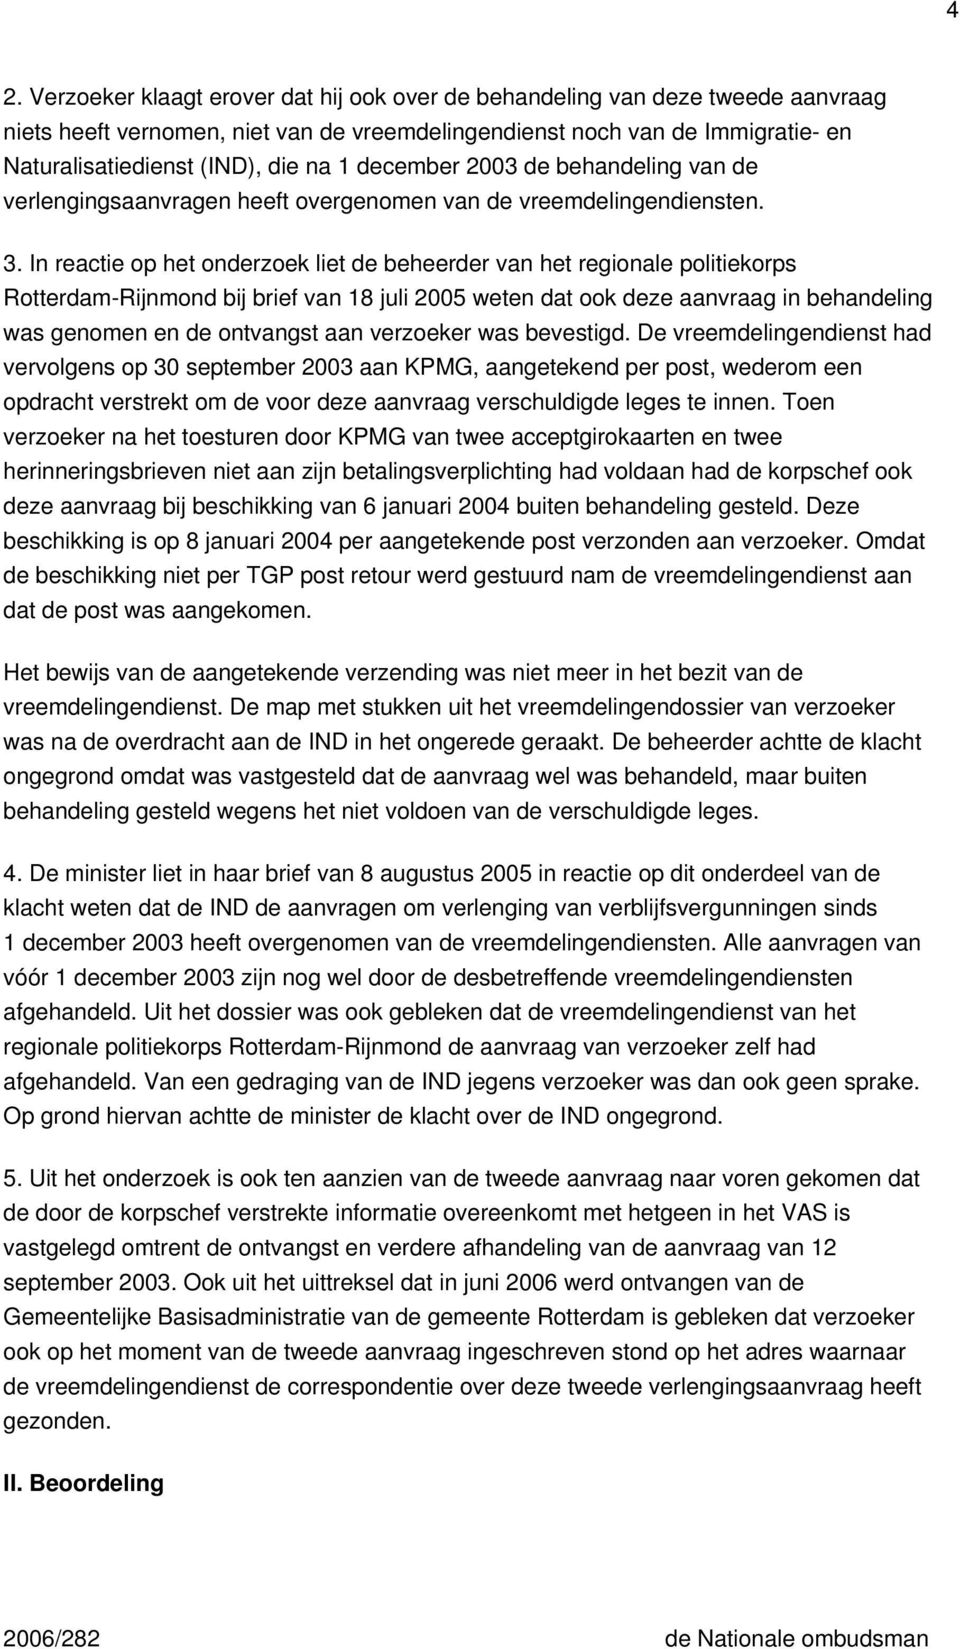 In reactie op het onderzoek liet de beheerder van het regionale politiekorps Rotterdam-Rijnmond bij brief van 18 juli 2005 weten dat ook deze aanvraag in behandeling was genomen en de ontvangst aan